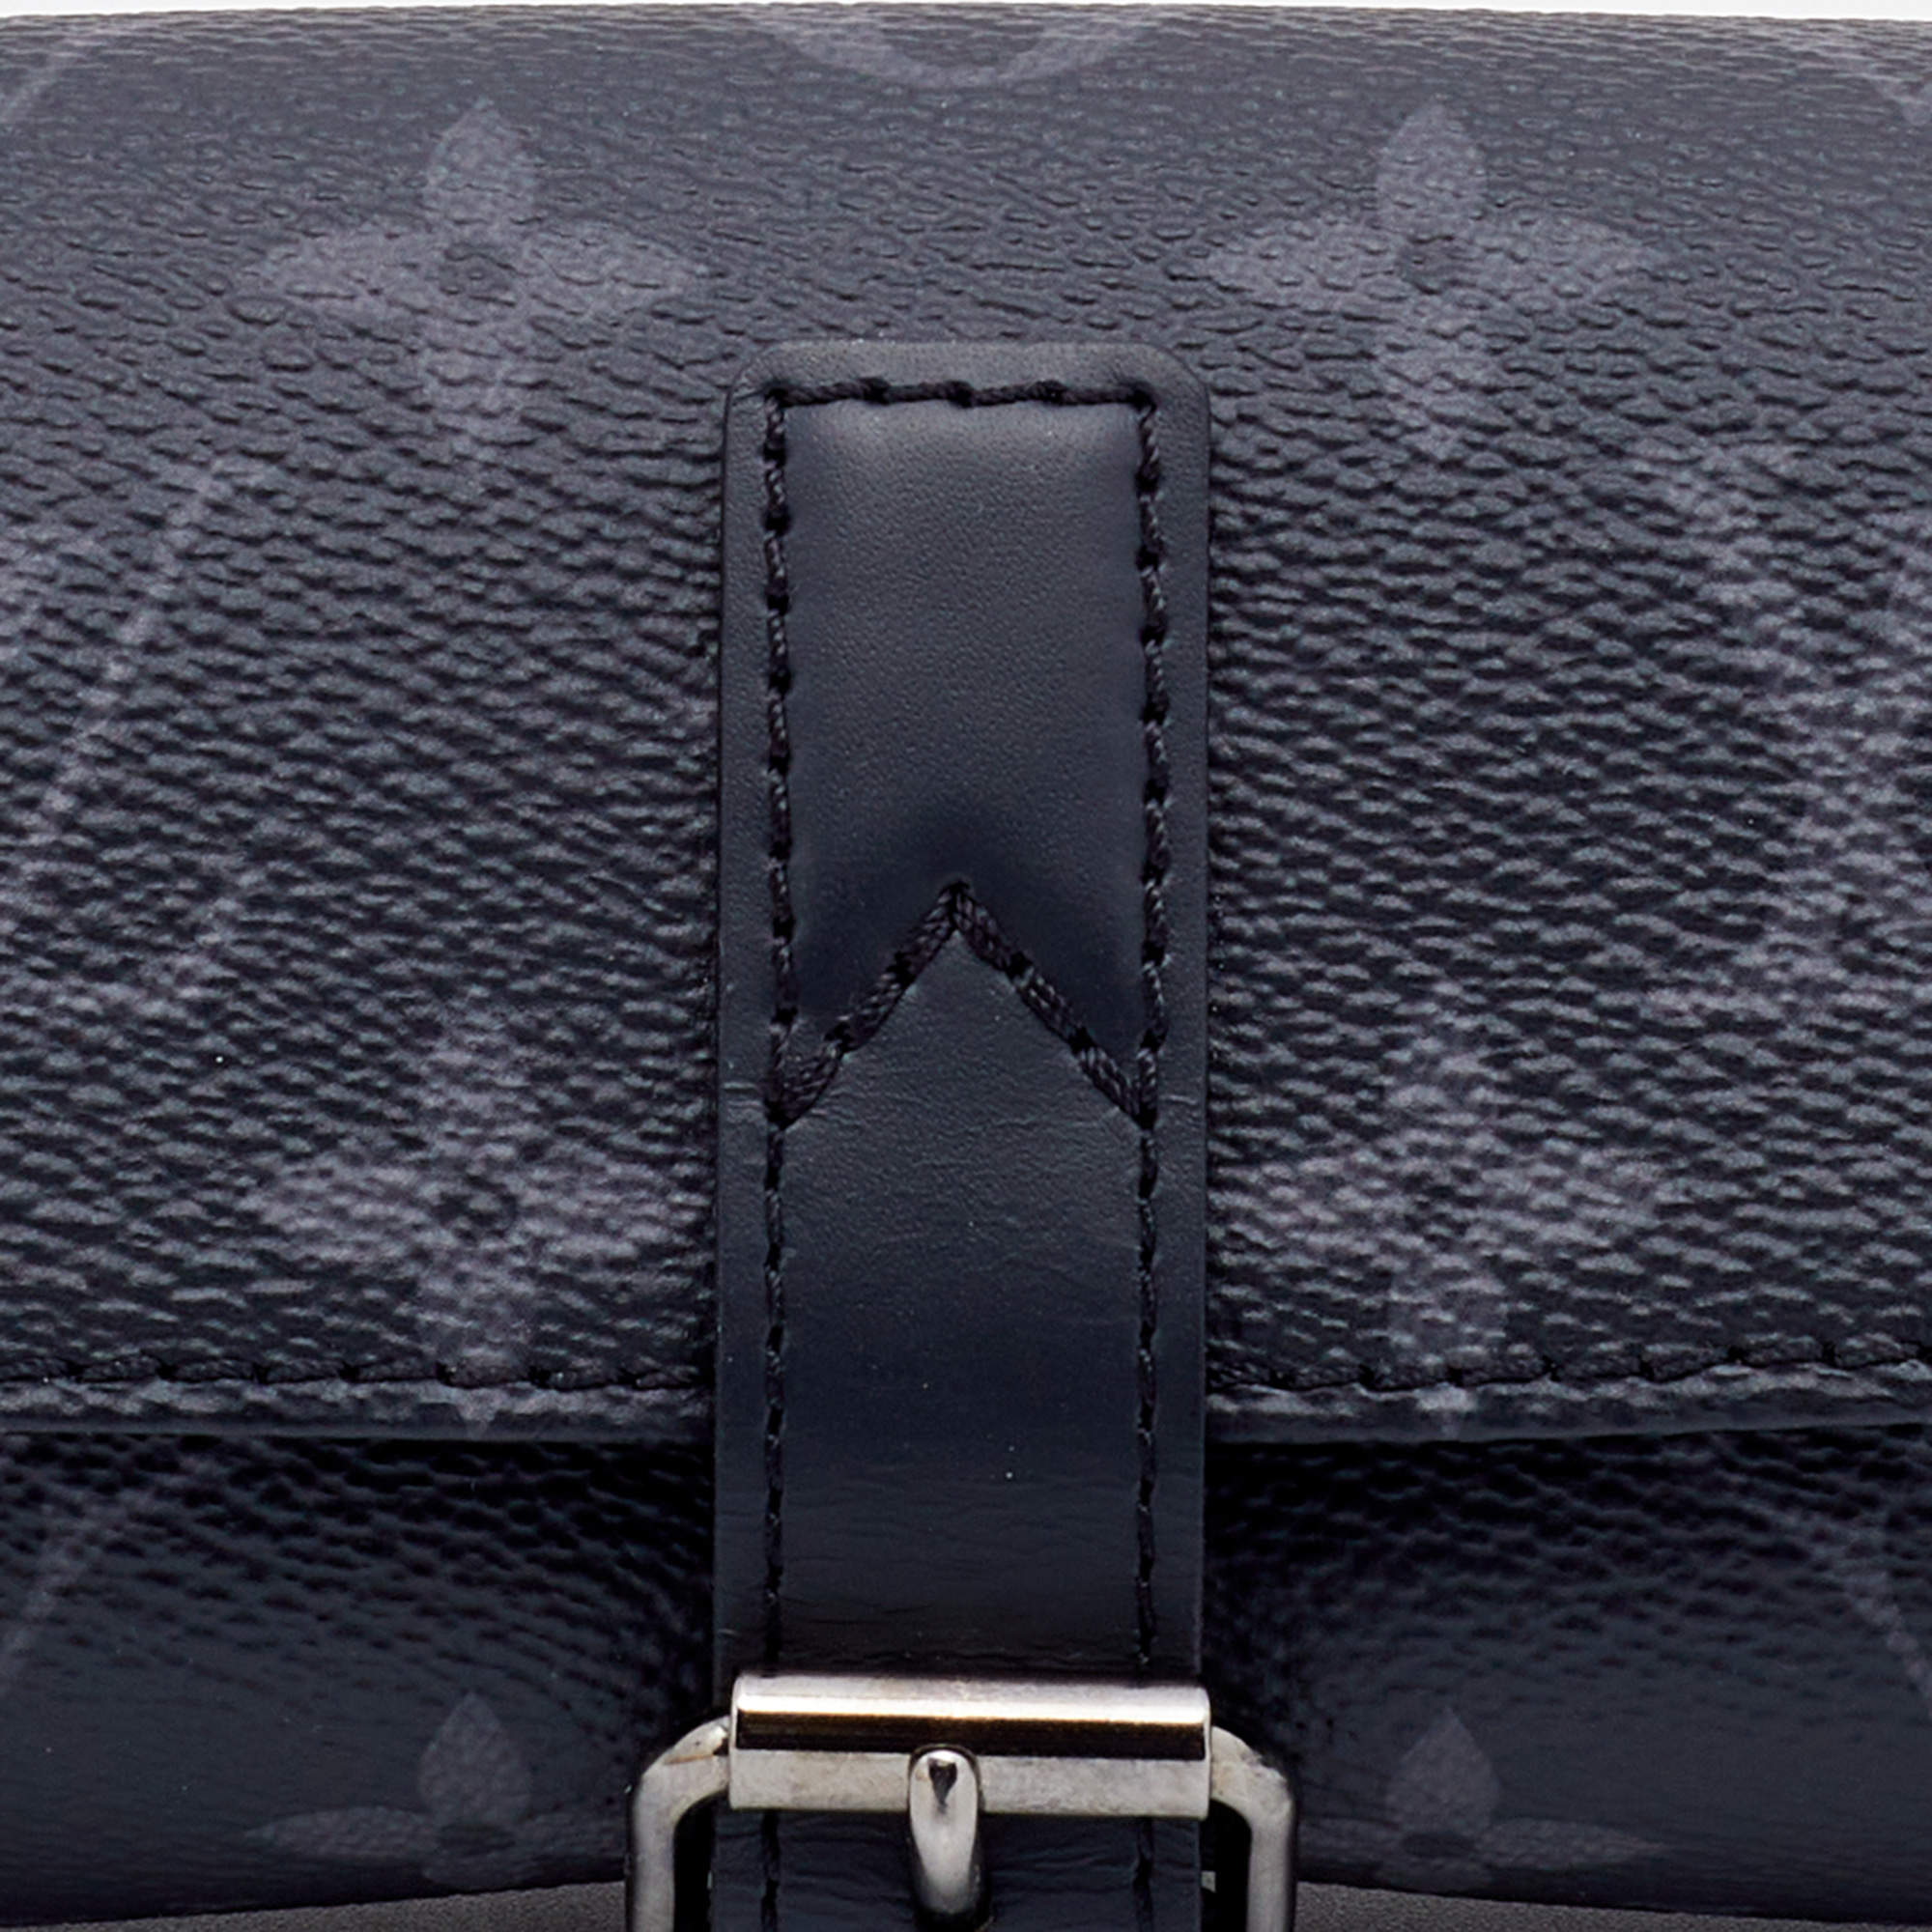 Louis Vuitton 3 Watch Case - IetpShops shop online